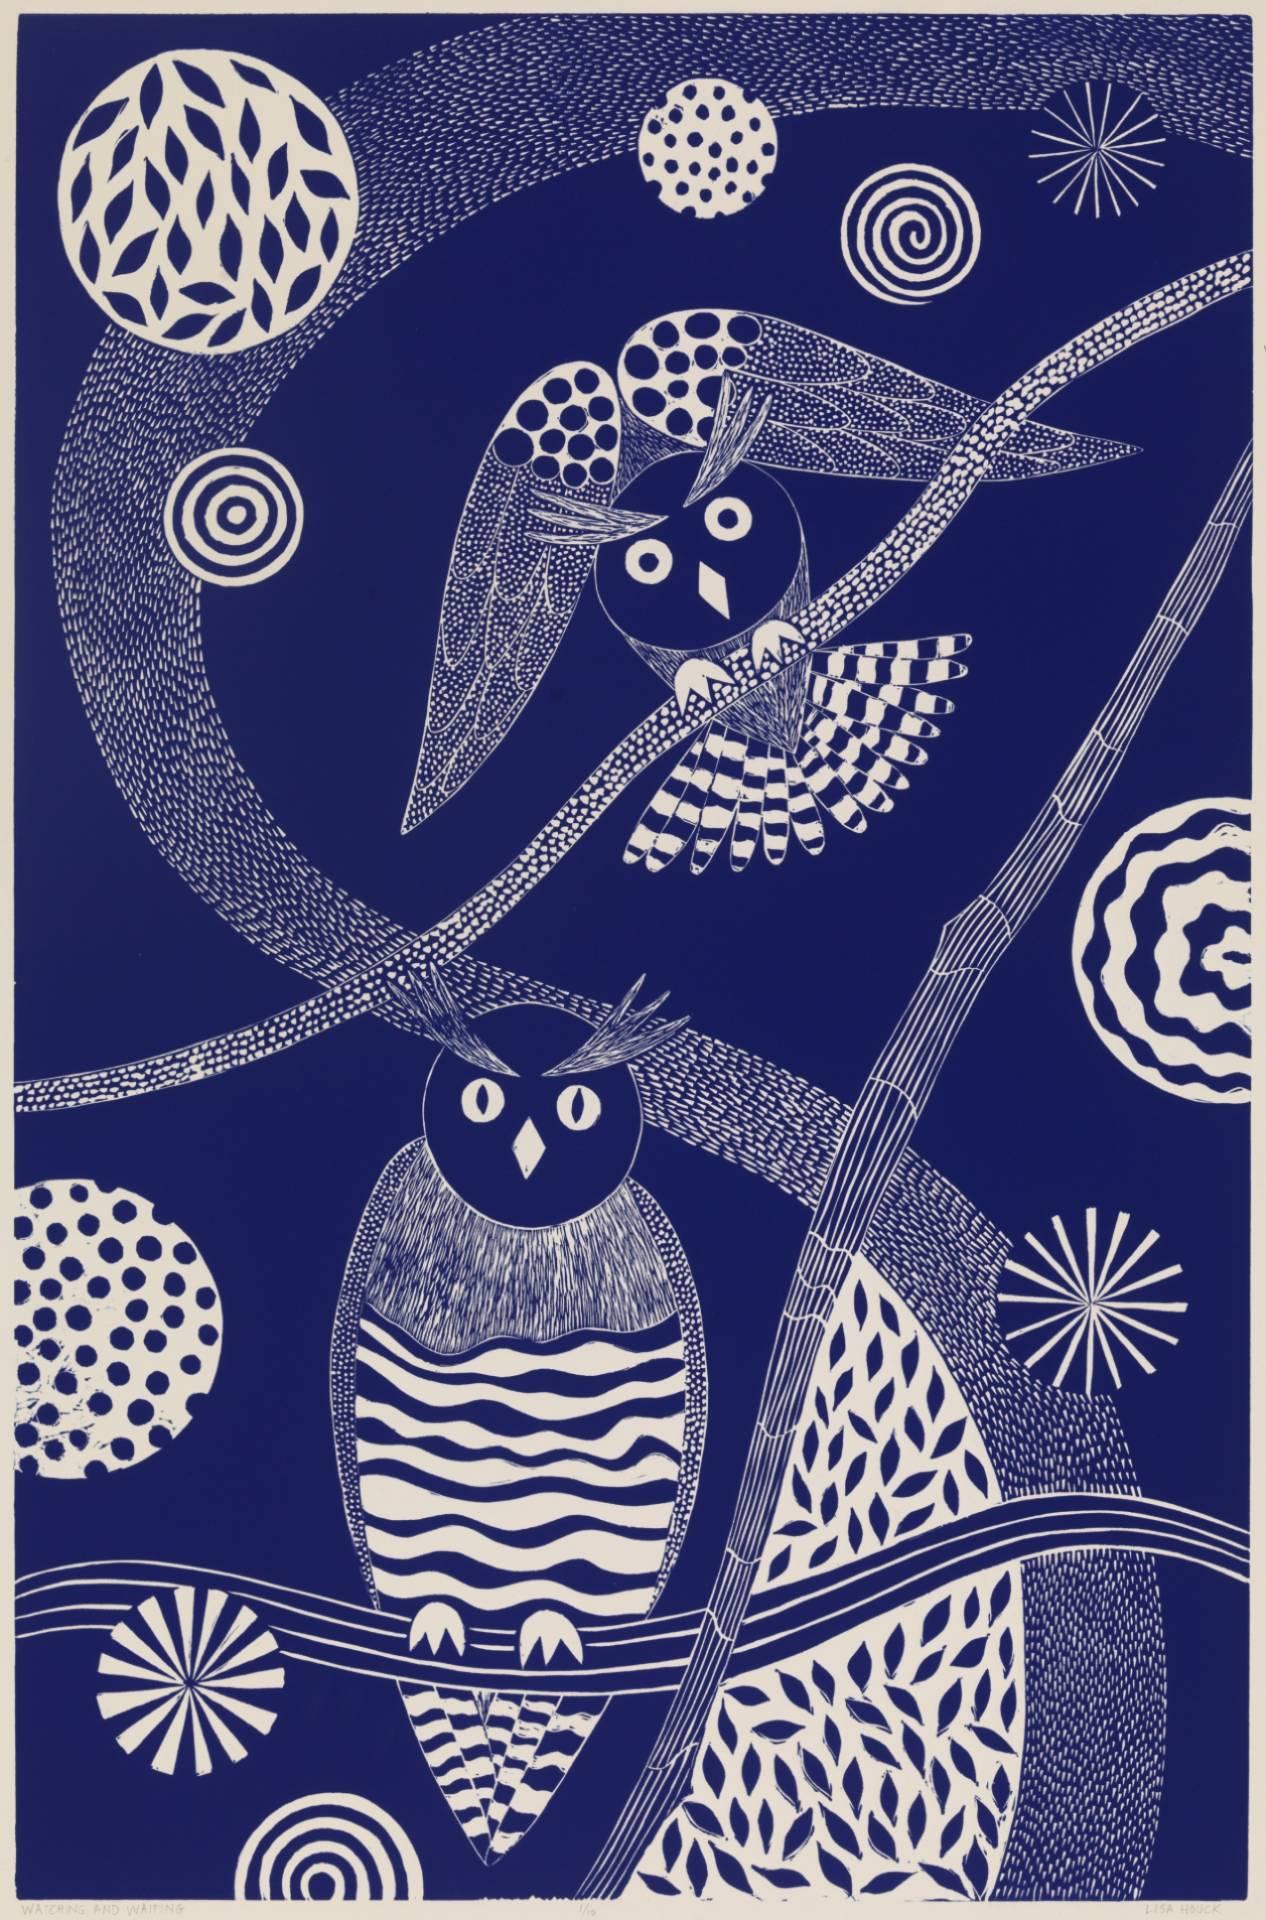 Lisa Houck Animal Print – „Watching and Waiting“, volkstümlich inspirierter blauer Linoleum-Blockdruck von Eulen